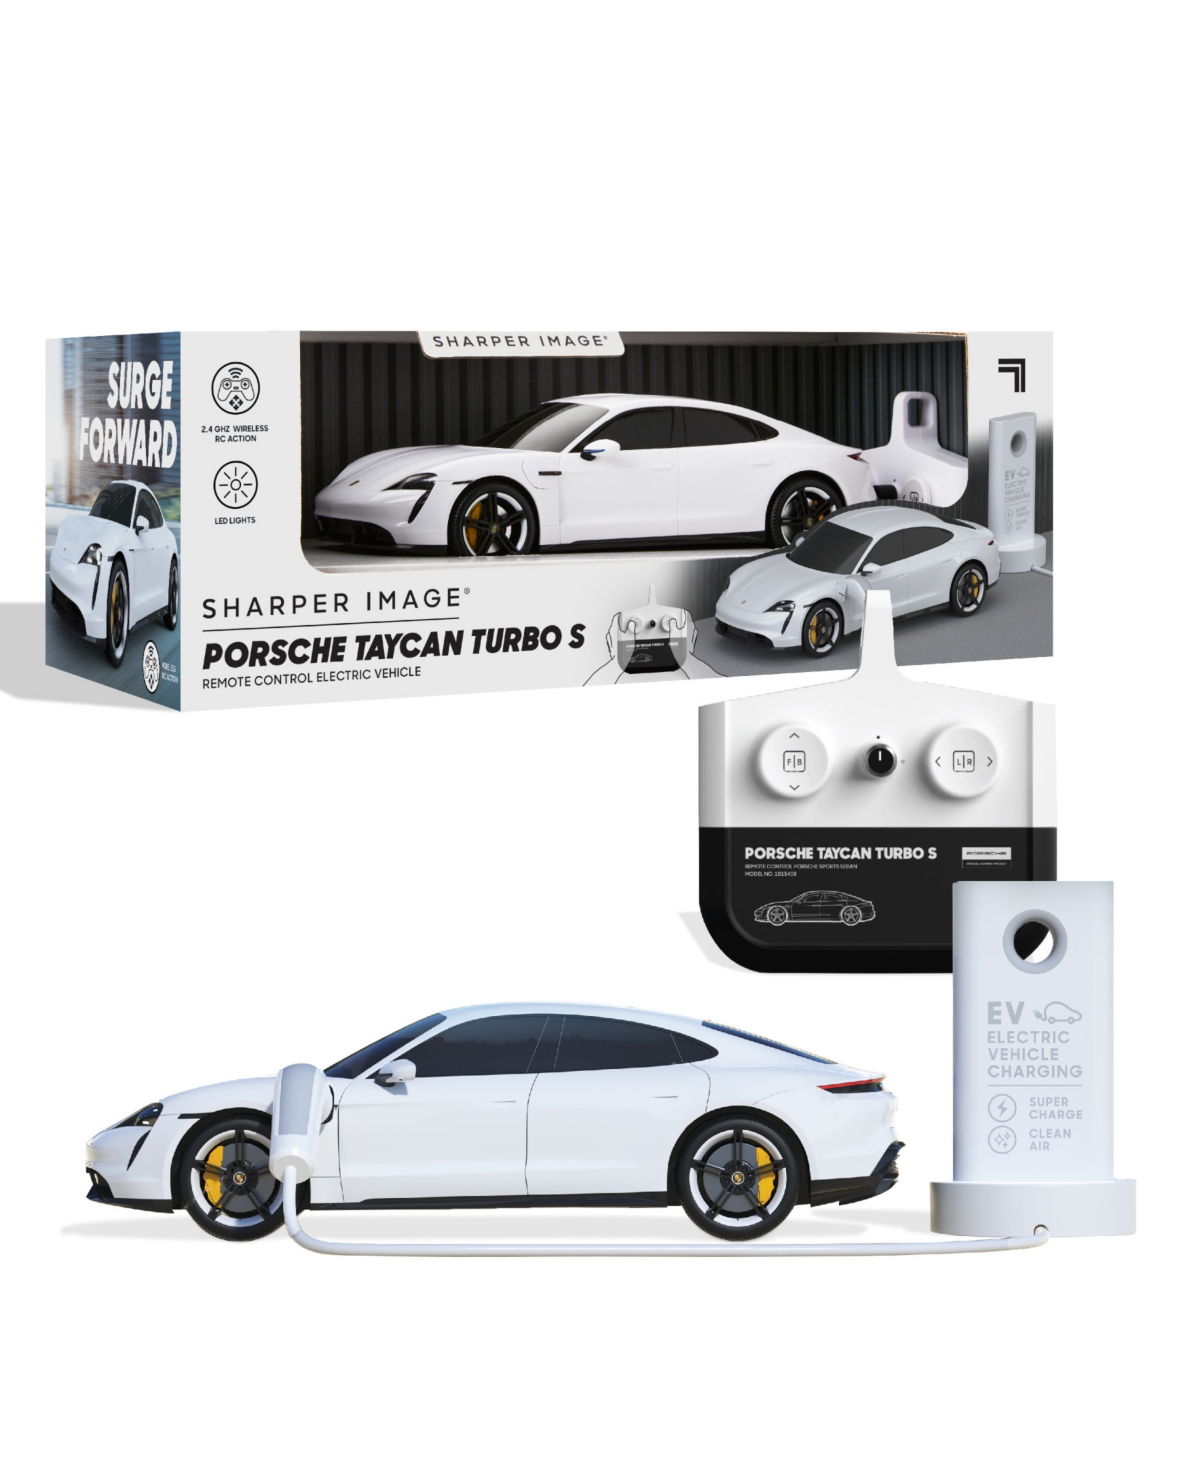 Sharper Image Porsche Taycan Turbo S Remote Control Electric Car In White